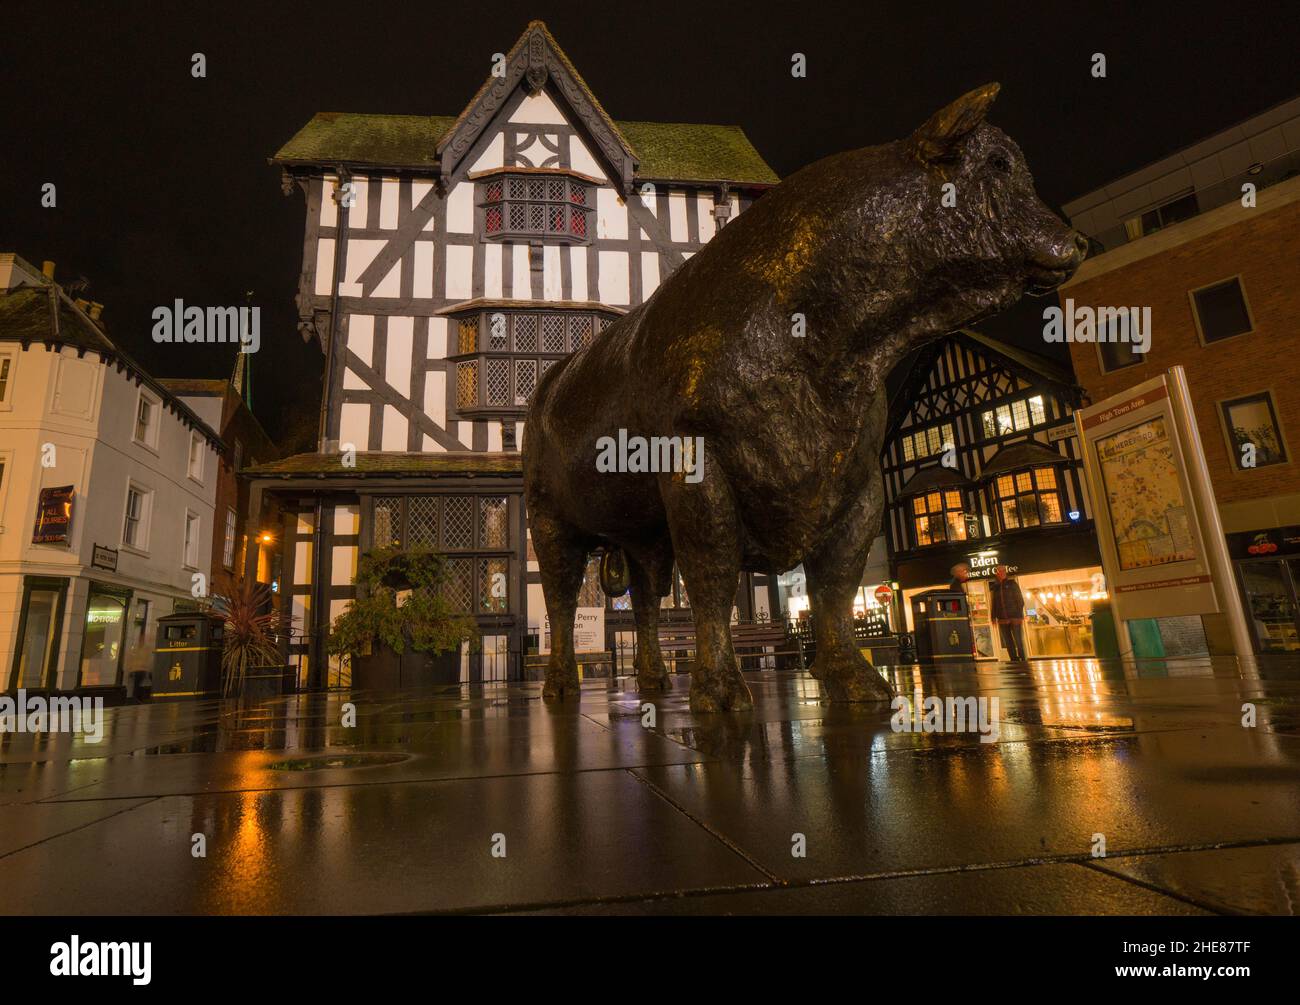 Nachtansicht der Statue von Hereford Bull, die vor dem alten Haus steht Hereford, Herefordshire, Großbritannien. Dezember 2021. Stockfoto